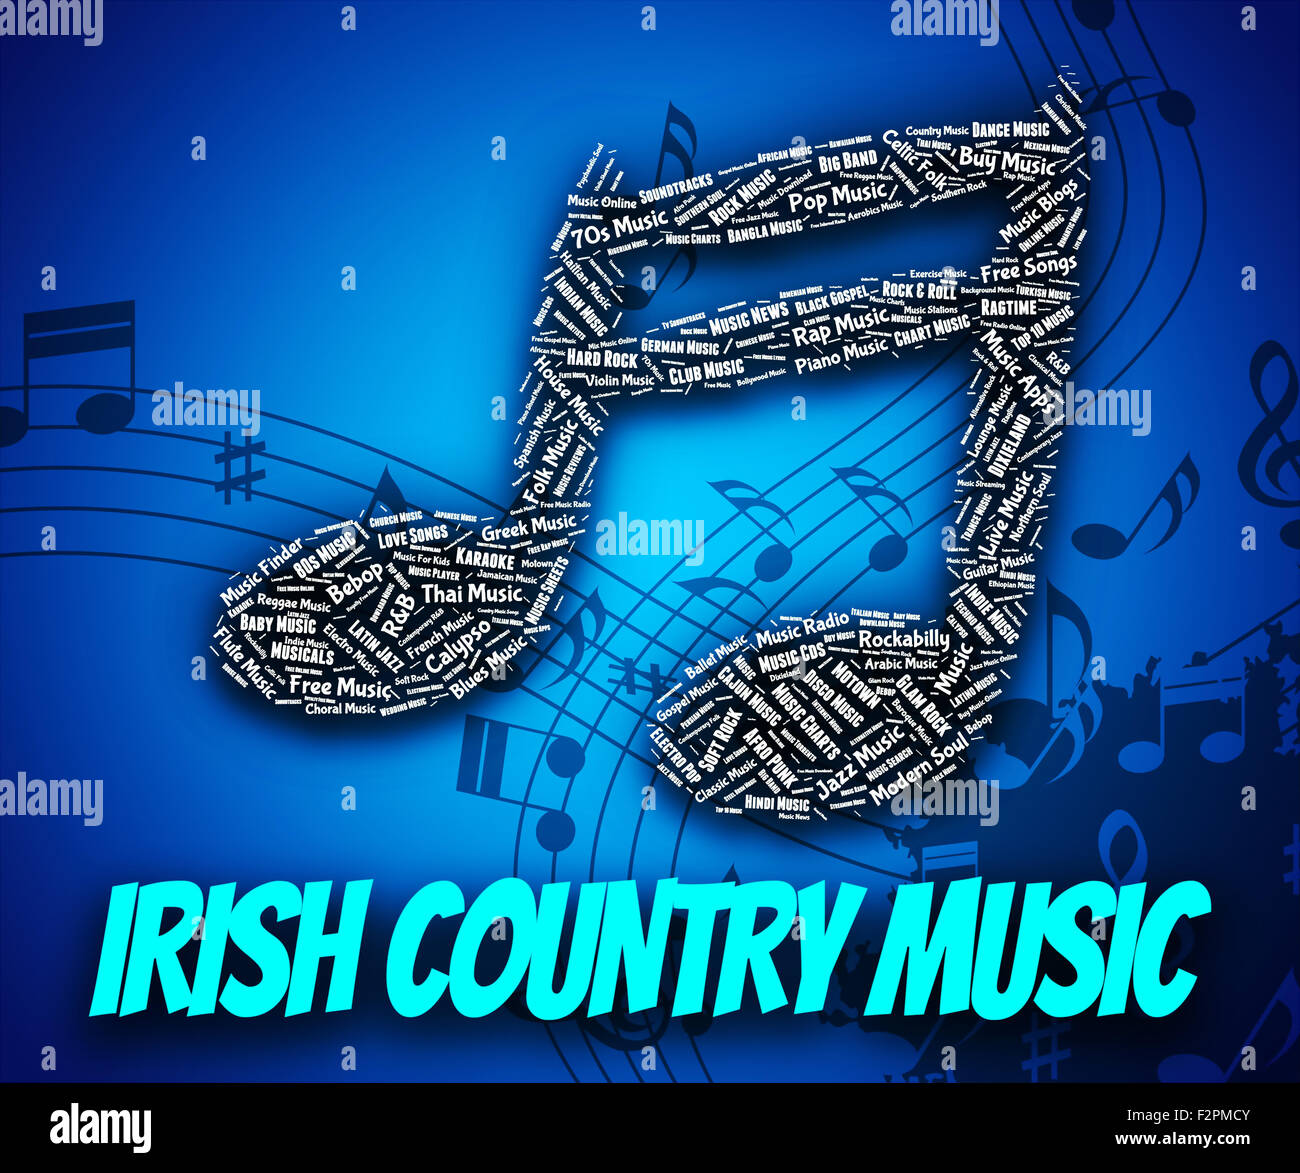 Música country irlandesa fotografías e imágenes de alta resolución - Alamy